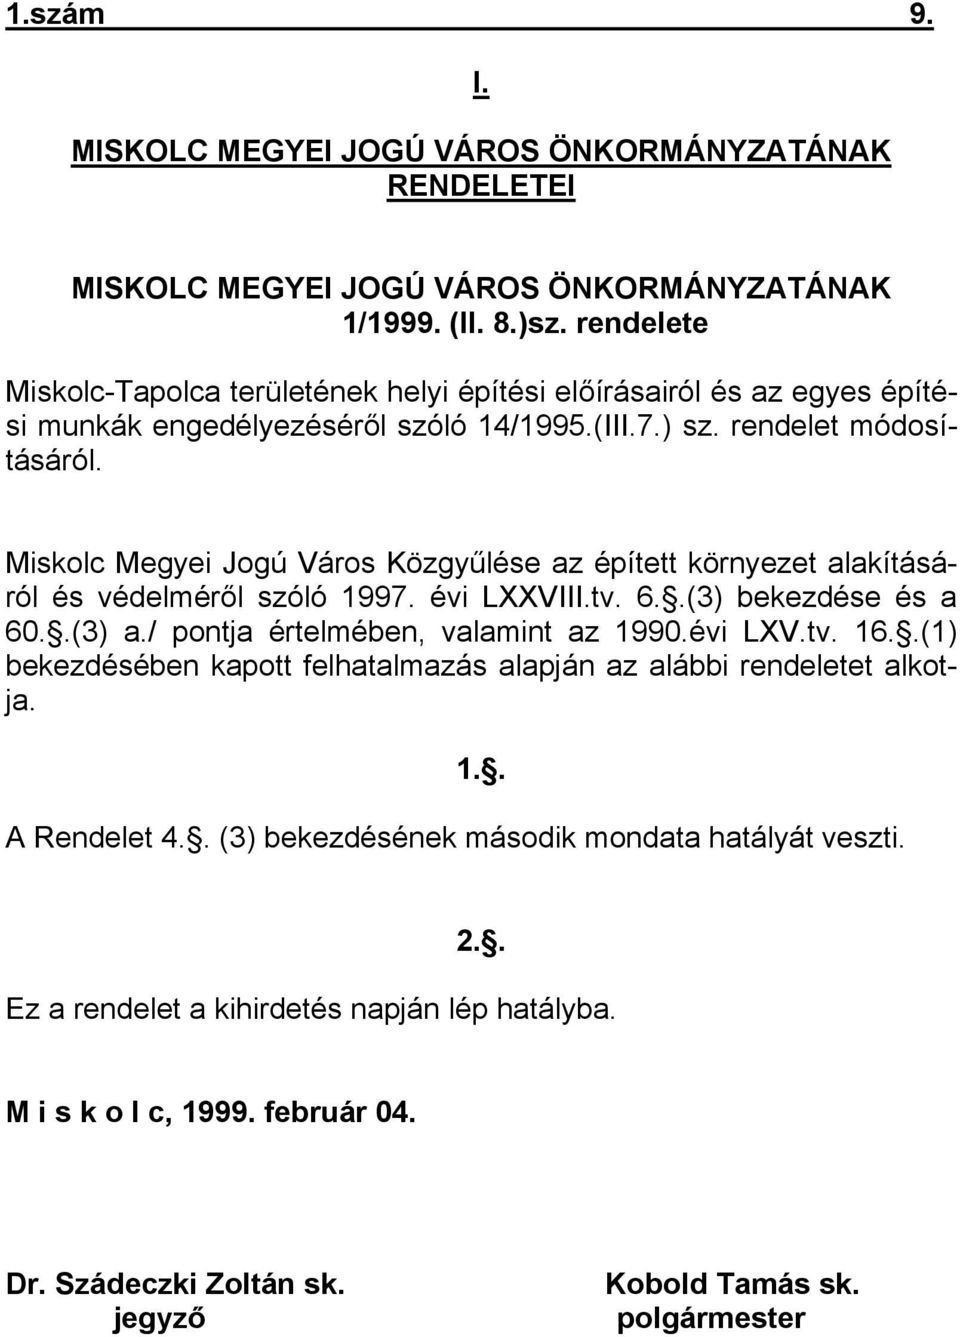 Miskolc Megyei Jogú Város Közgyűlése az épített környezet alakításáról és védelméről szóló 1997. évi LXXVIII.tv. 6..(3) bekezdése és a 60..(3) a./ pontja értelmében, valamint az 1990.évi LXV.tv. 16.